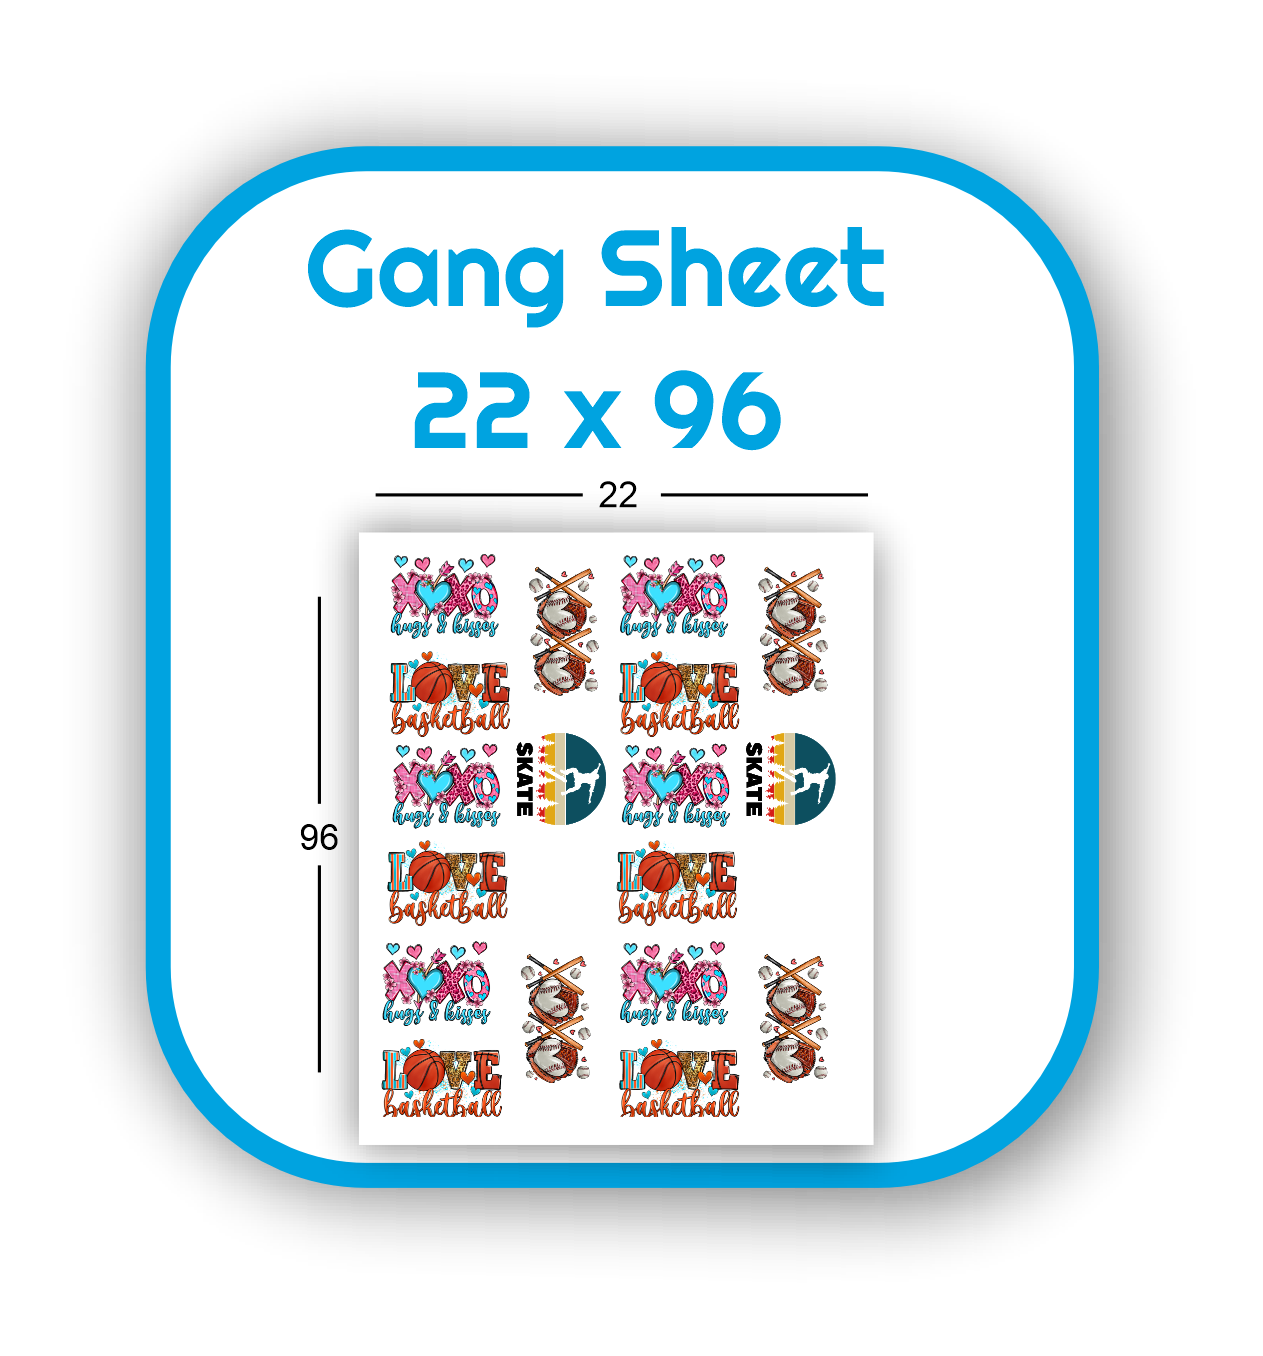 gang-sheet-22x96